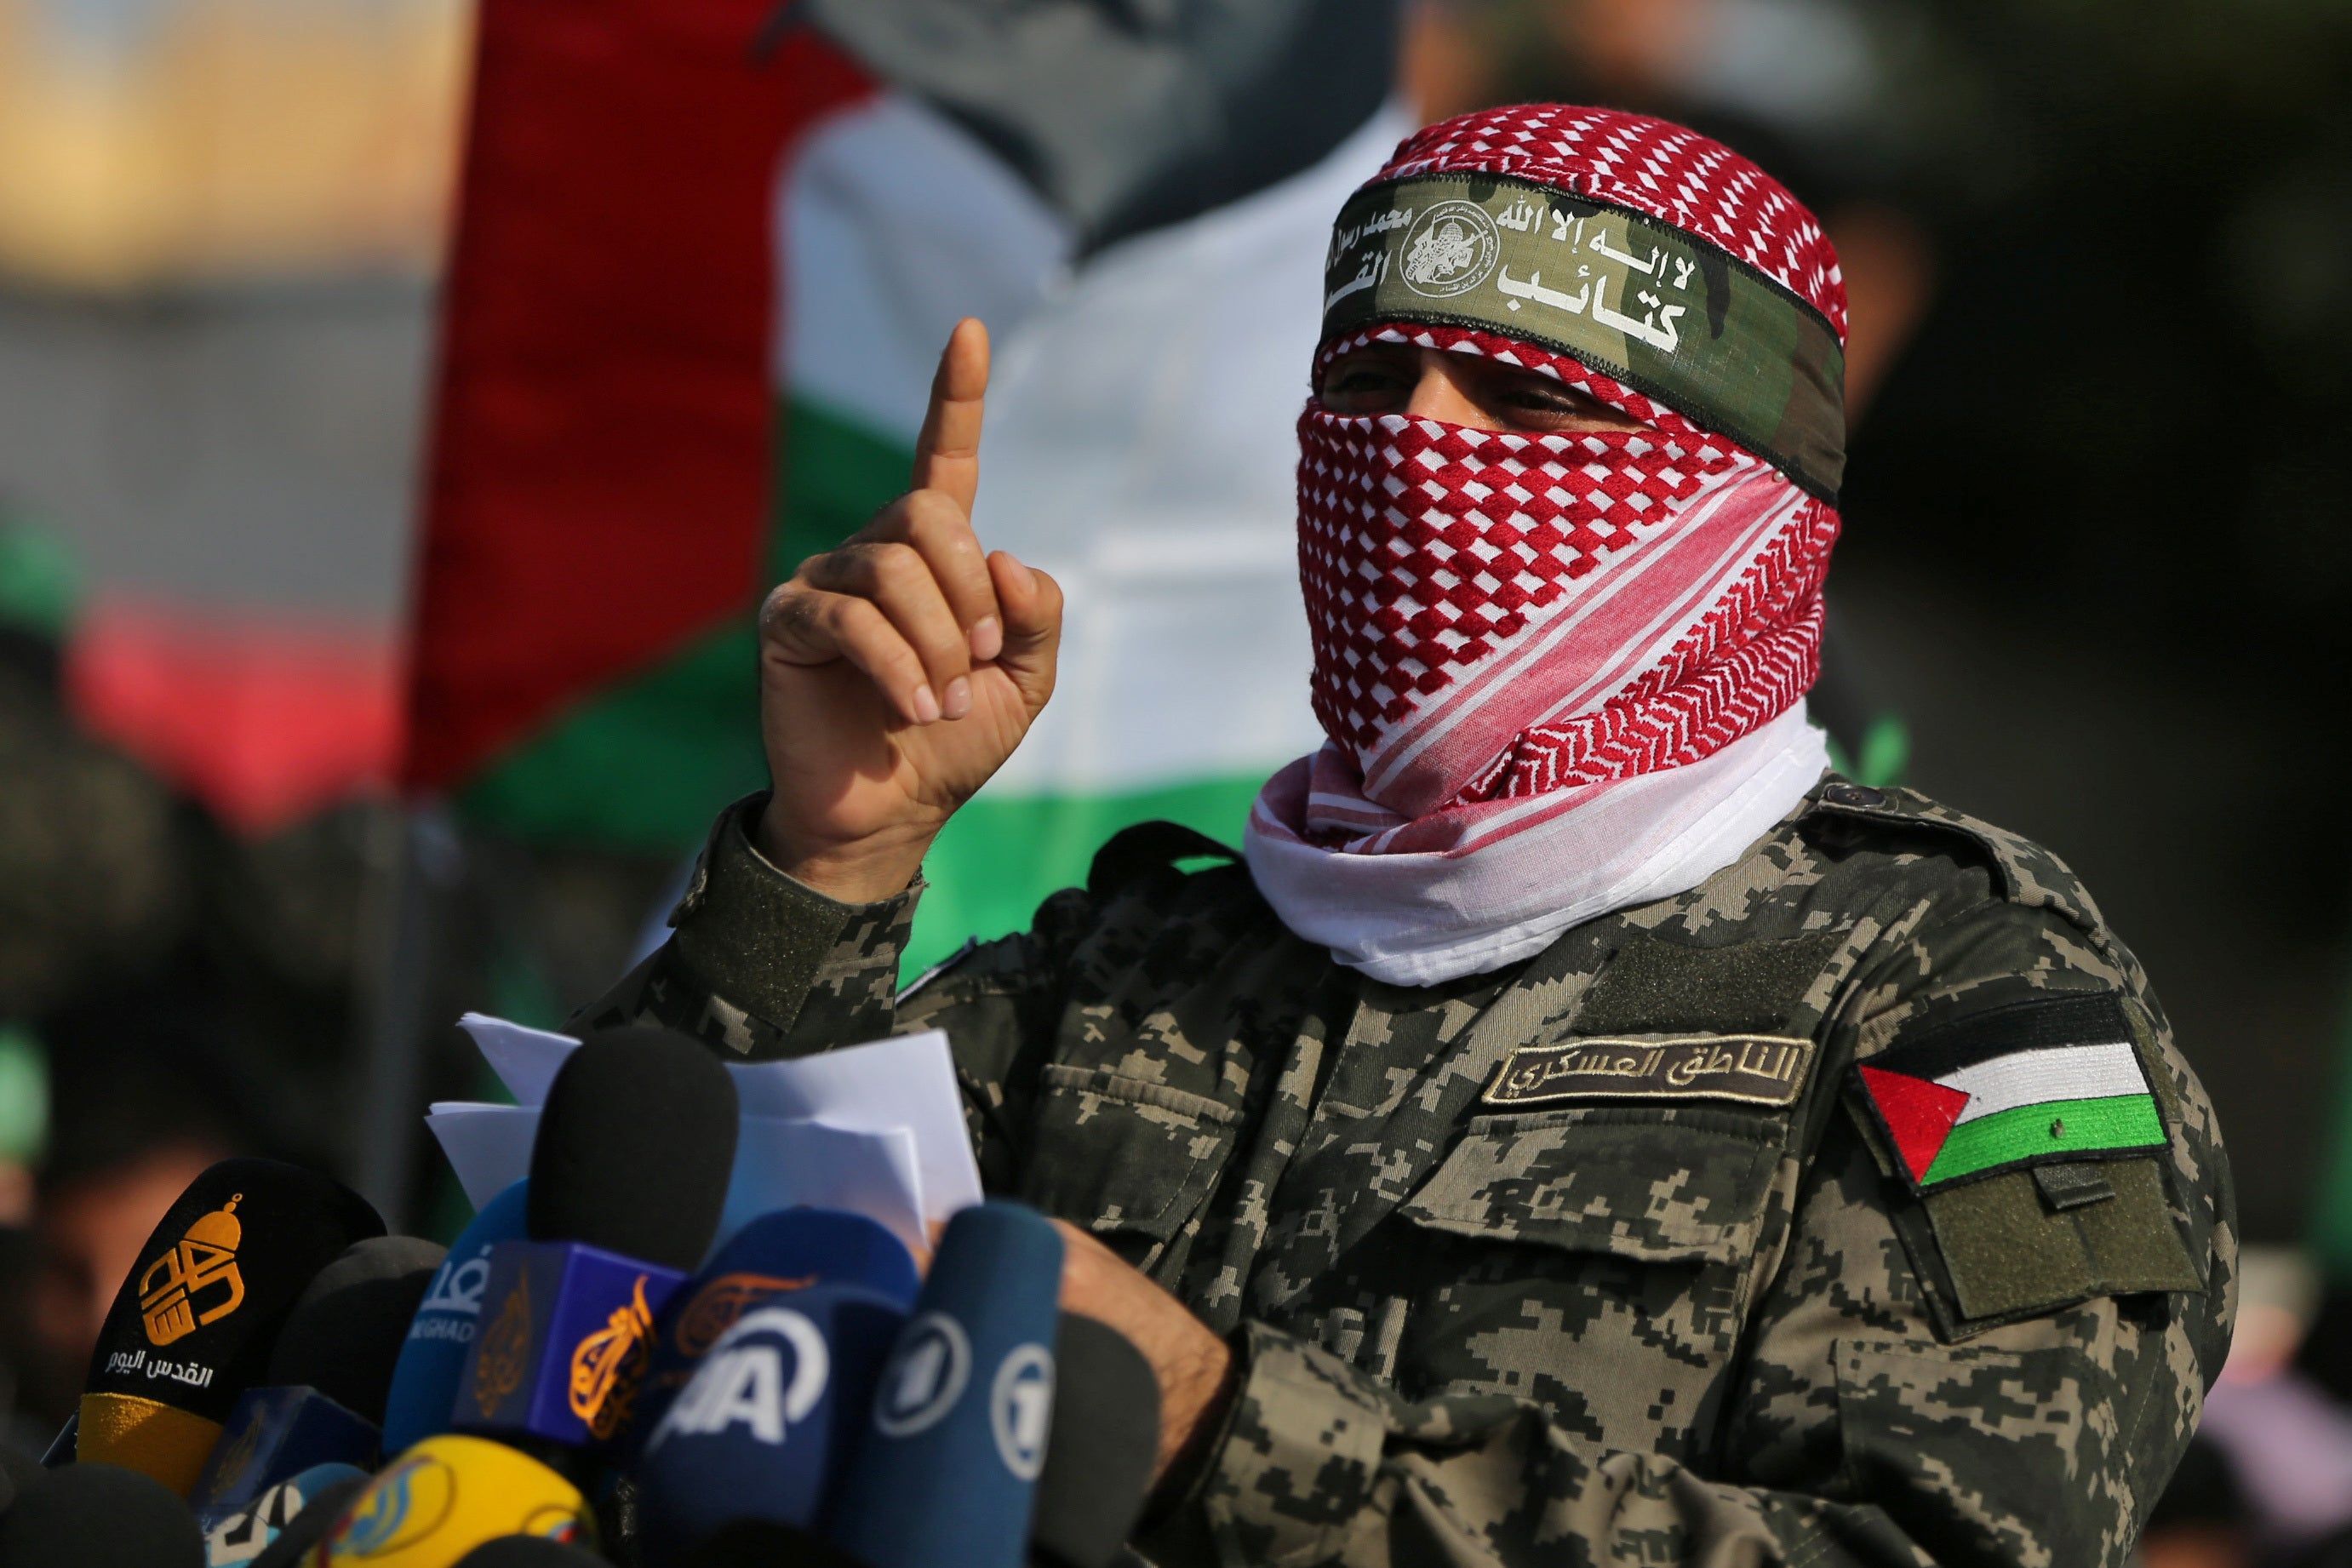 Abu Ubaida, the spokesman of the Izz el-Deen al-Qassam Brigades